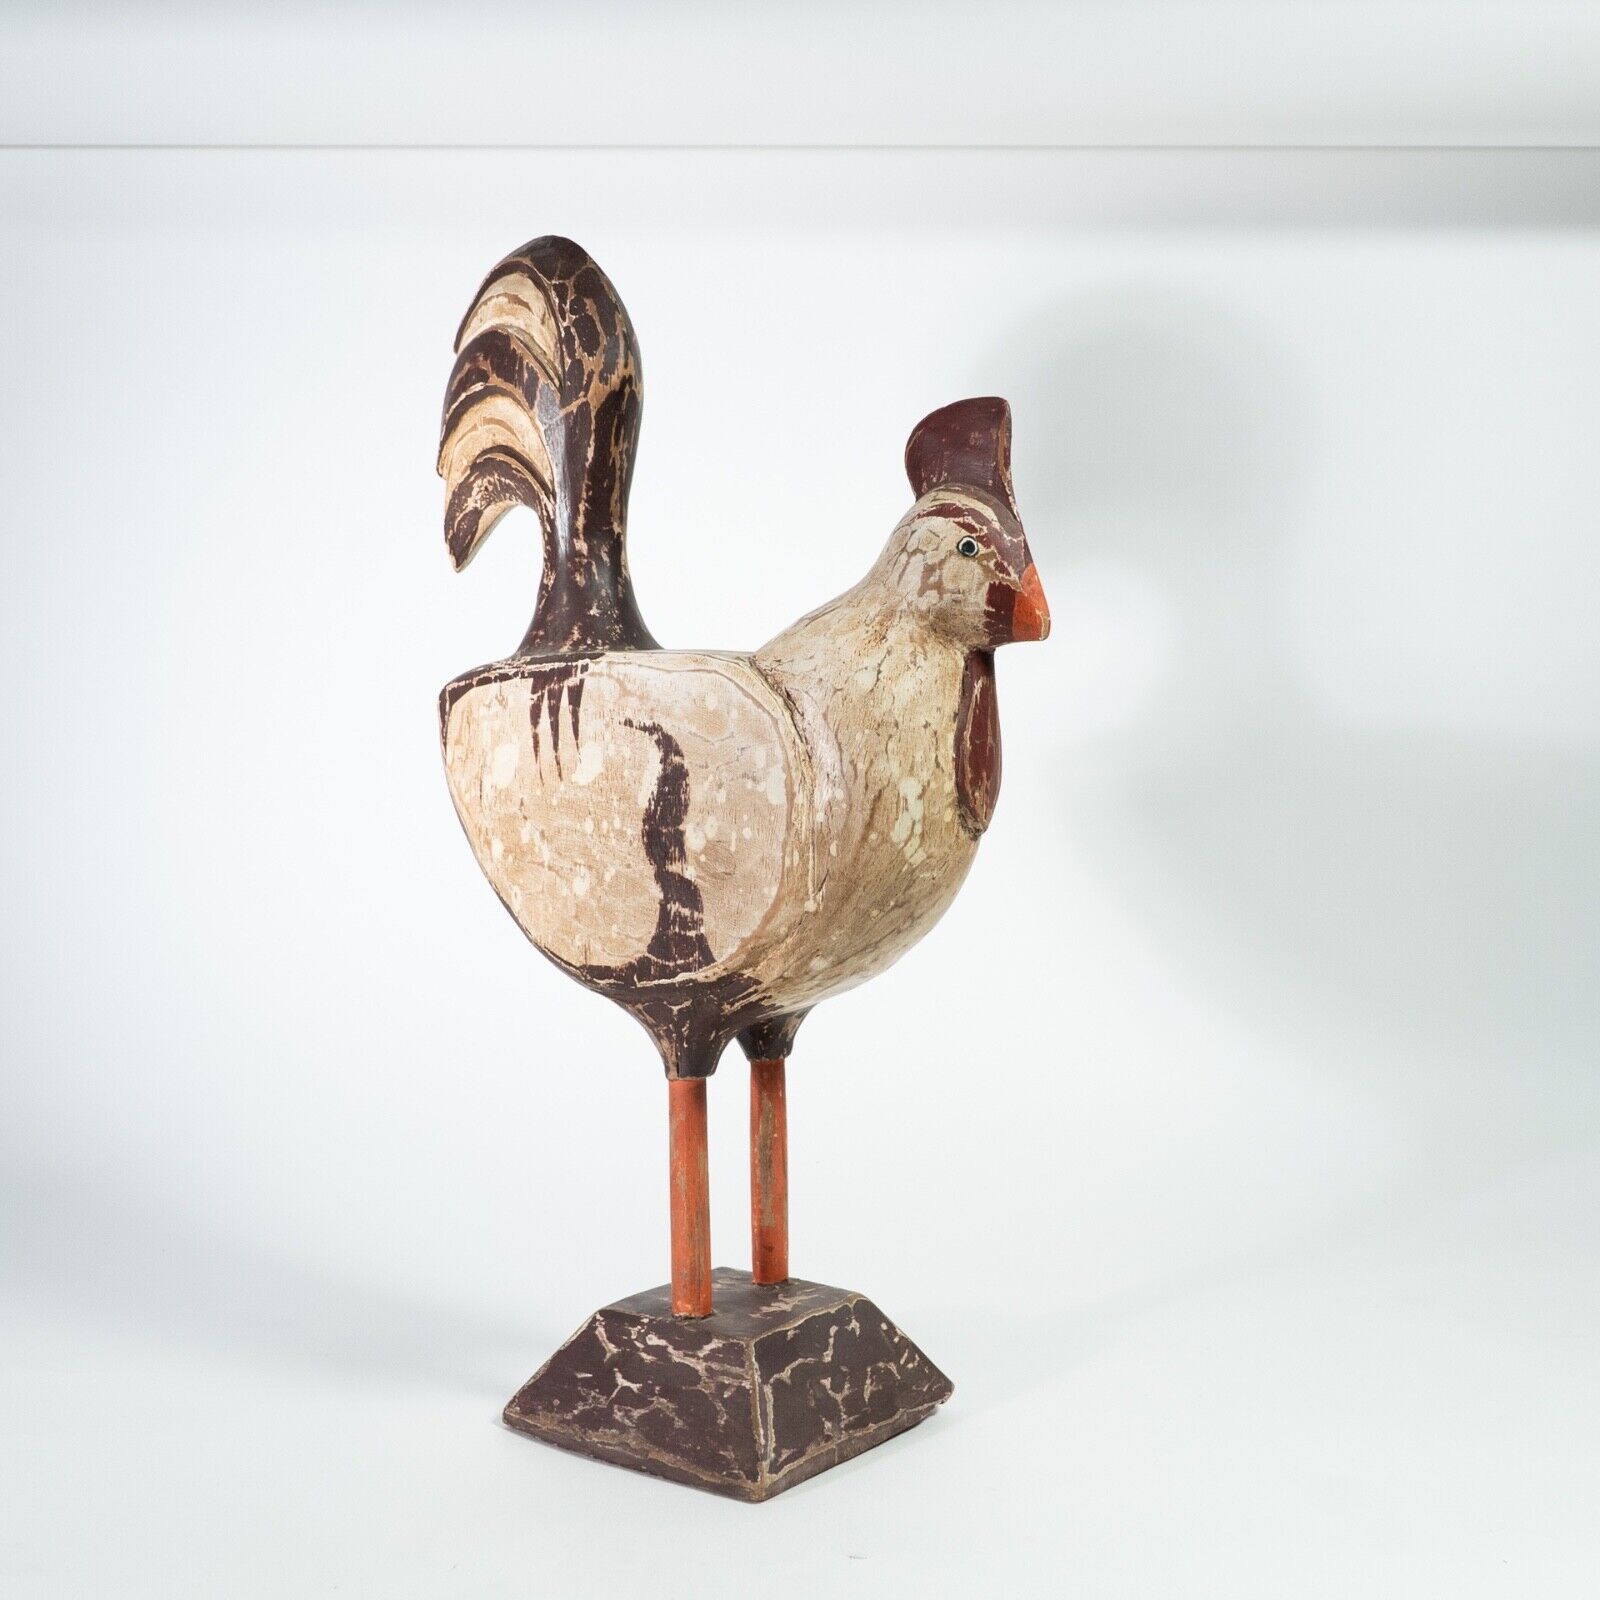 Vintage Wooden Hand Carved Rooster Folk Art Sculpture Rustic Decor